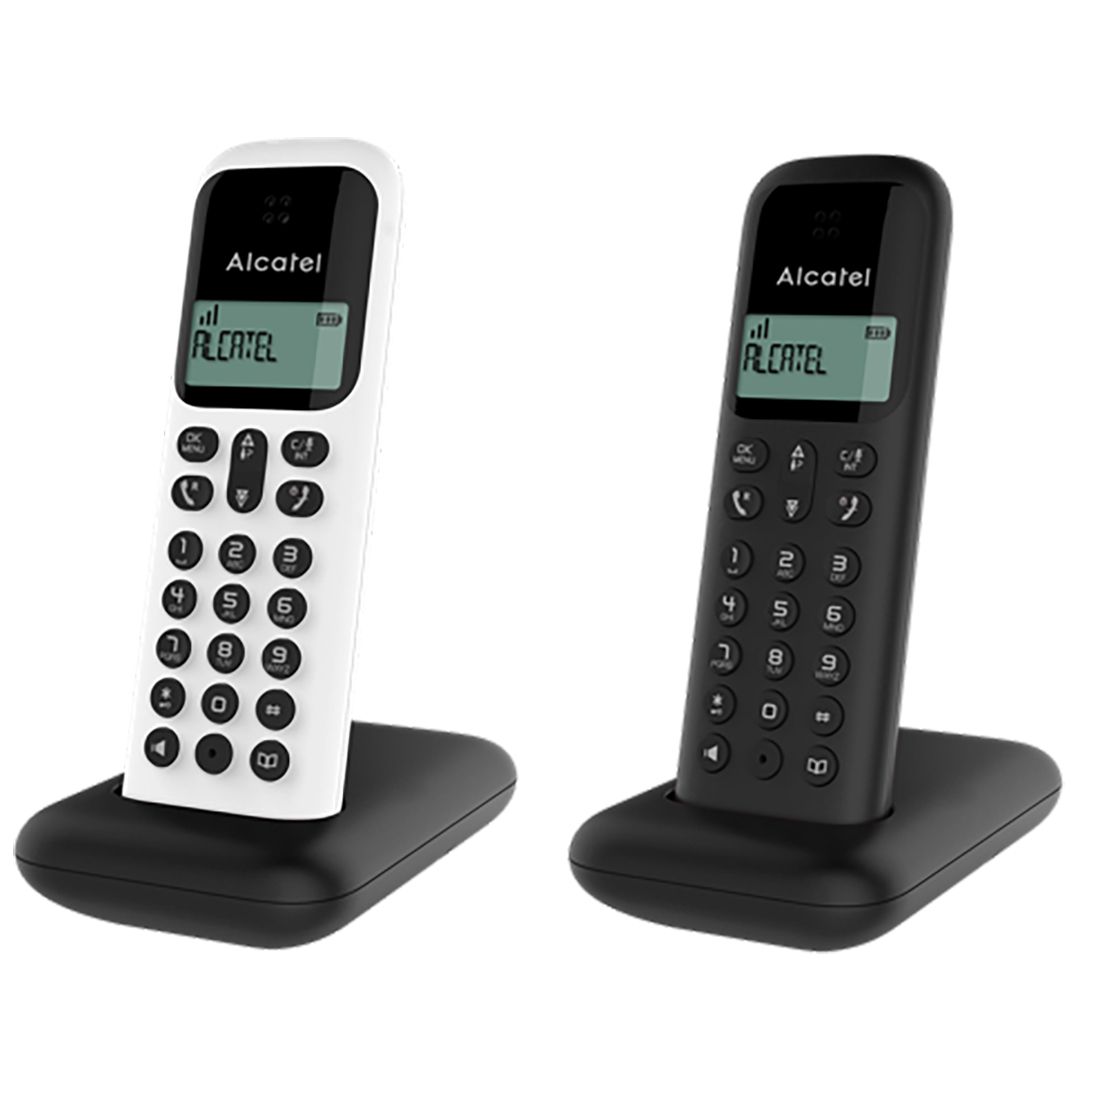 Alcatel S280 Duo Noir - Téléphone sans fil - Garantie 3 ans LDLC